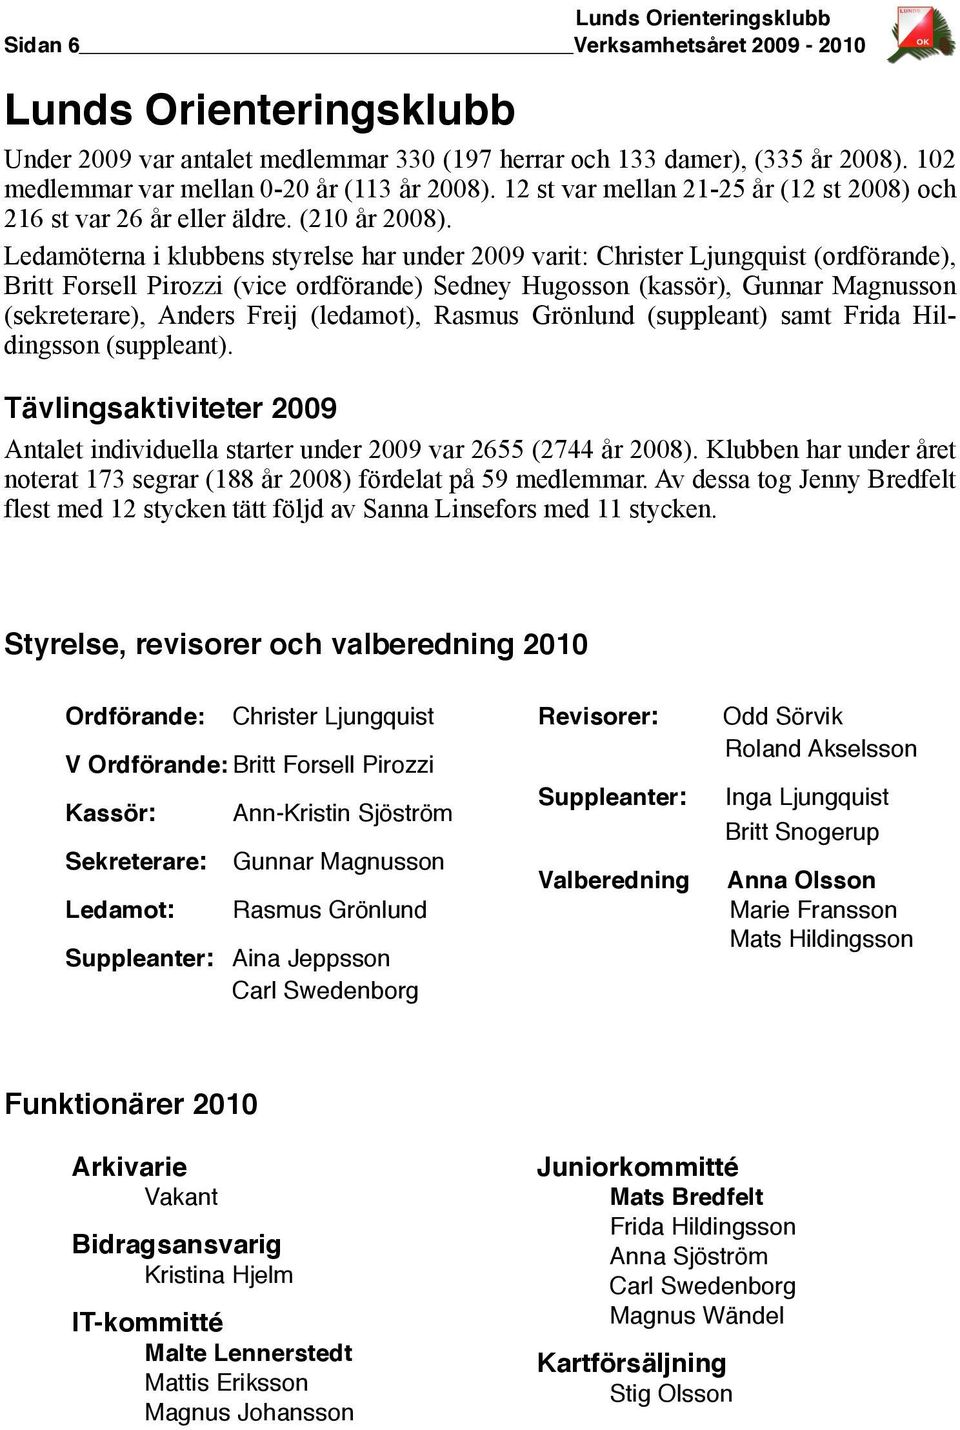 Ledamöterna i klubbens styrelse har under 2009 varit: Christer Ljungquist (ordförande), Britt Forsell Pirozzi (vice ordförande) Sedney Hugosson (kassör), Gunnar Magnusson (sekreterare), Anders Freij